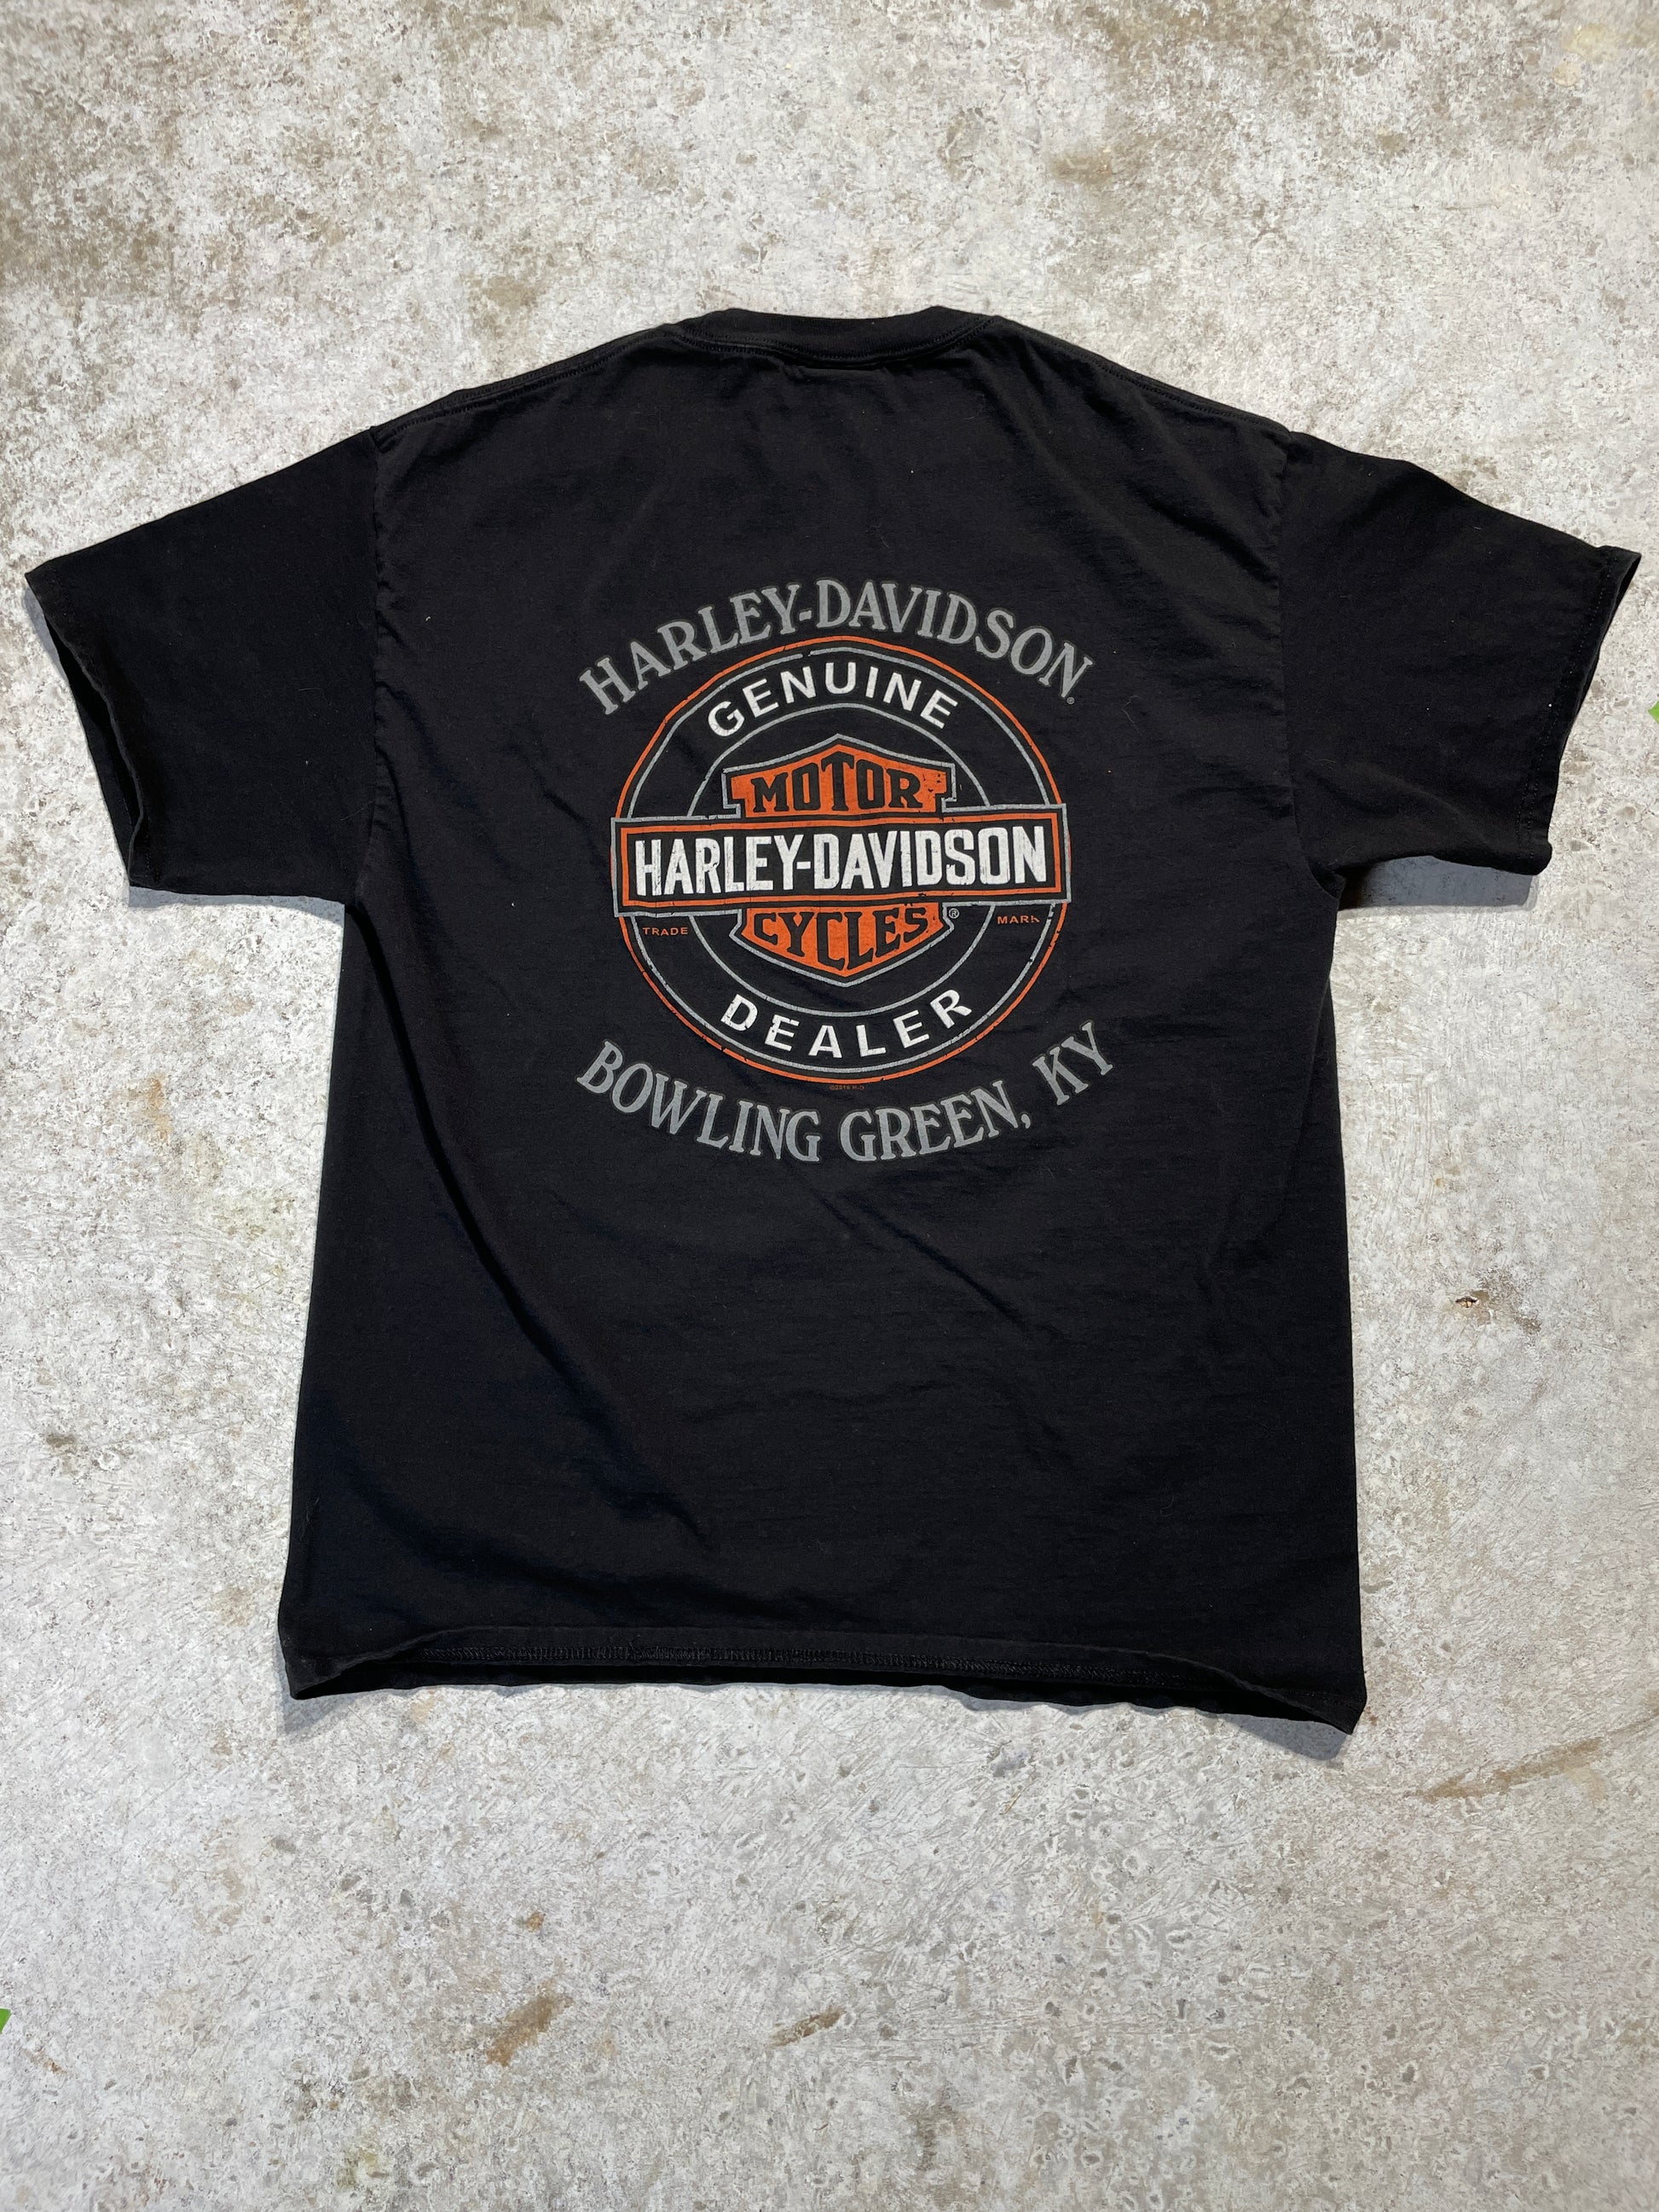 Harley Davidson Skulls Tee (Large), Tee - Vintage64.com